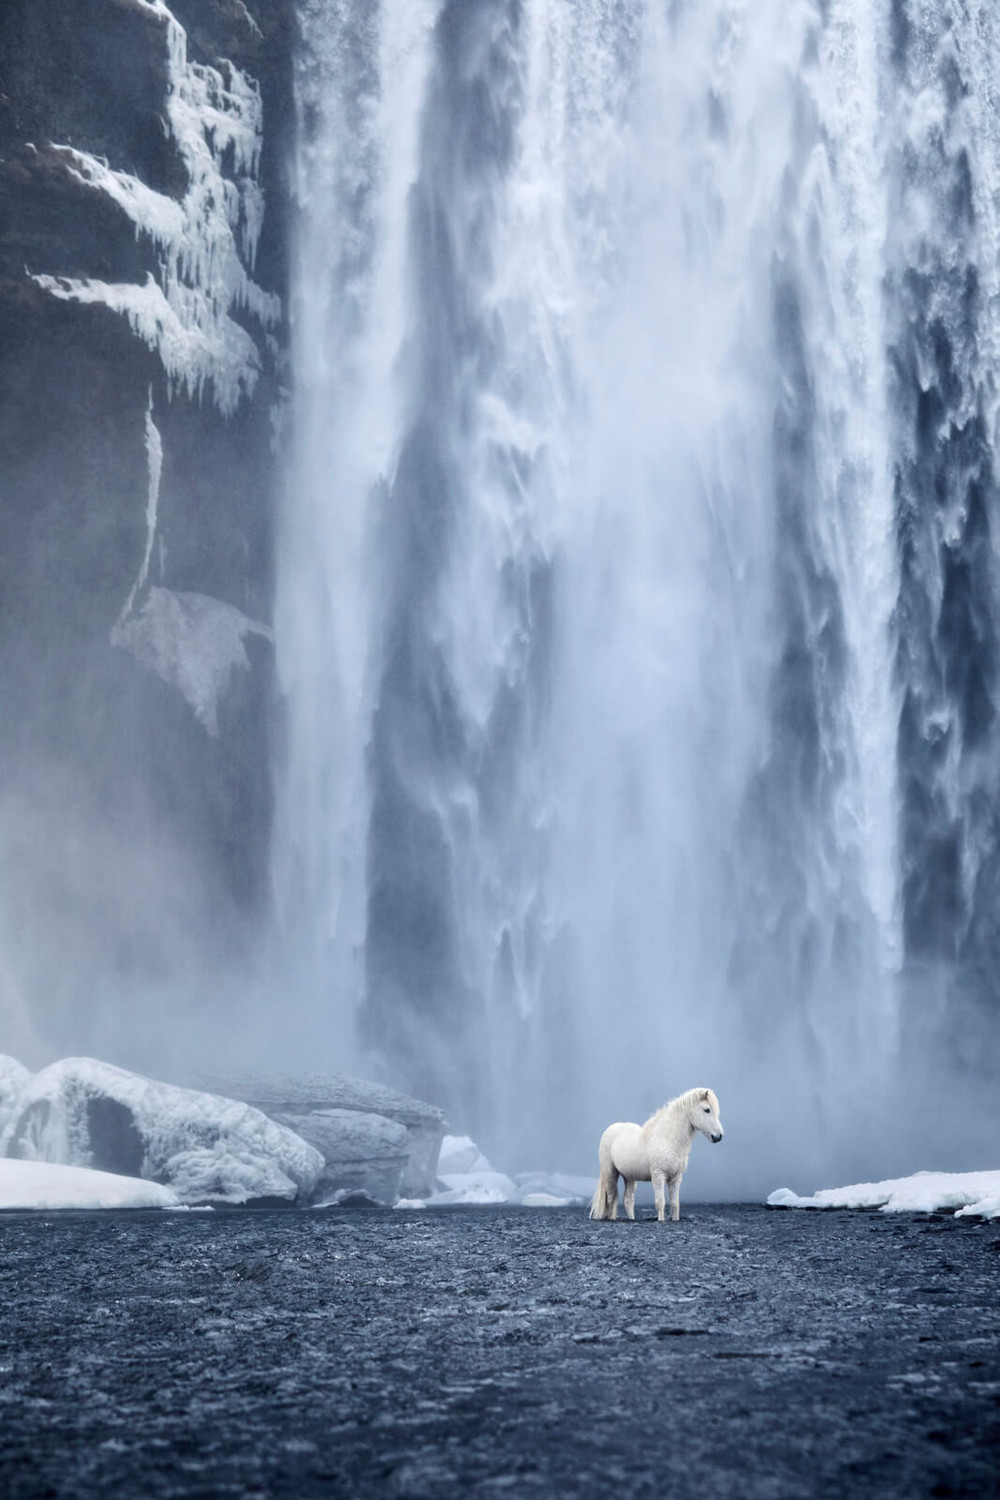 Лошади на фоне эпических исландских пейзажей